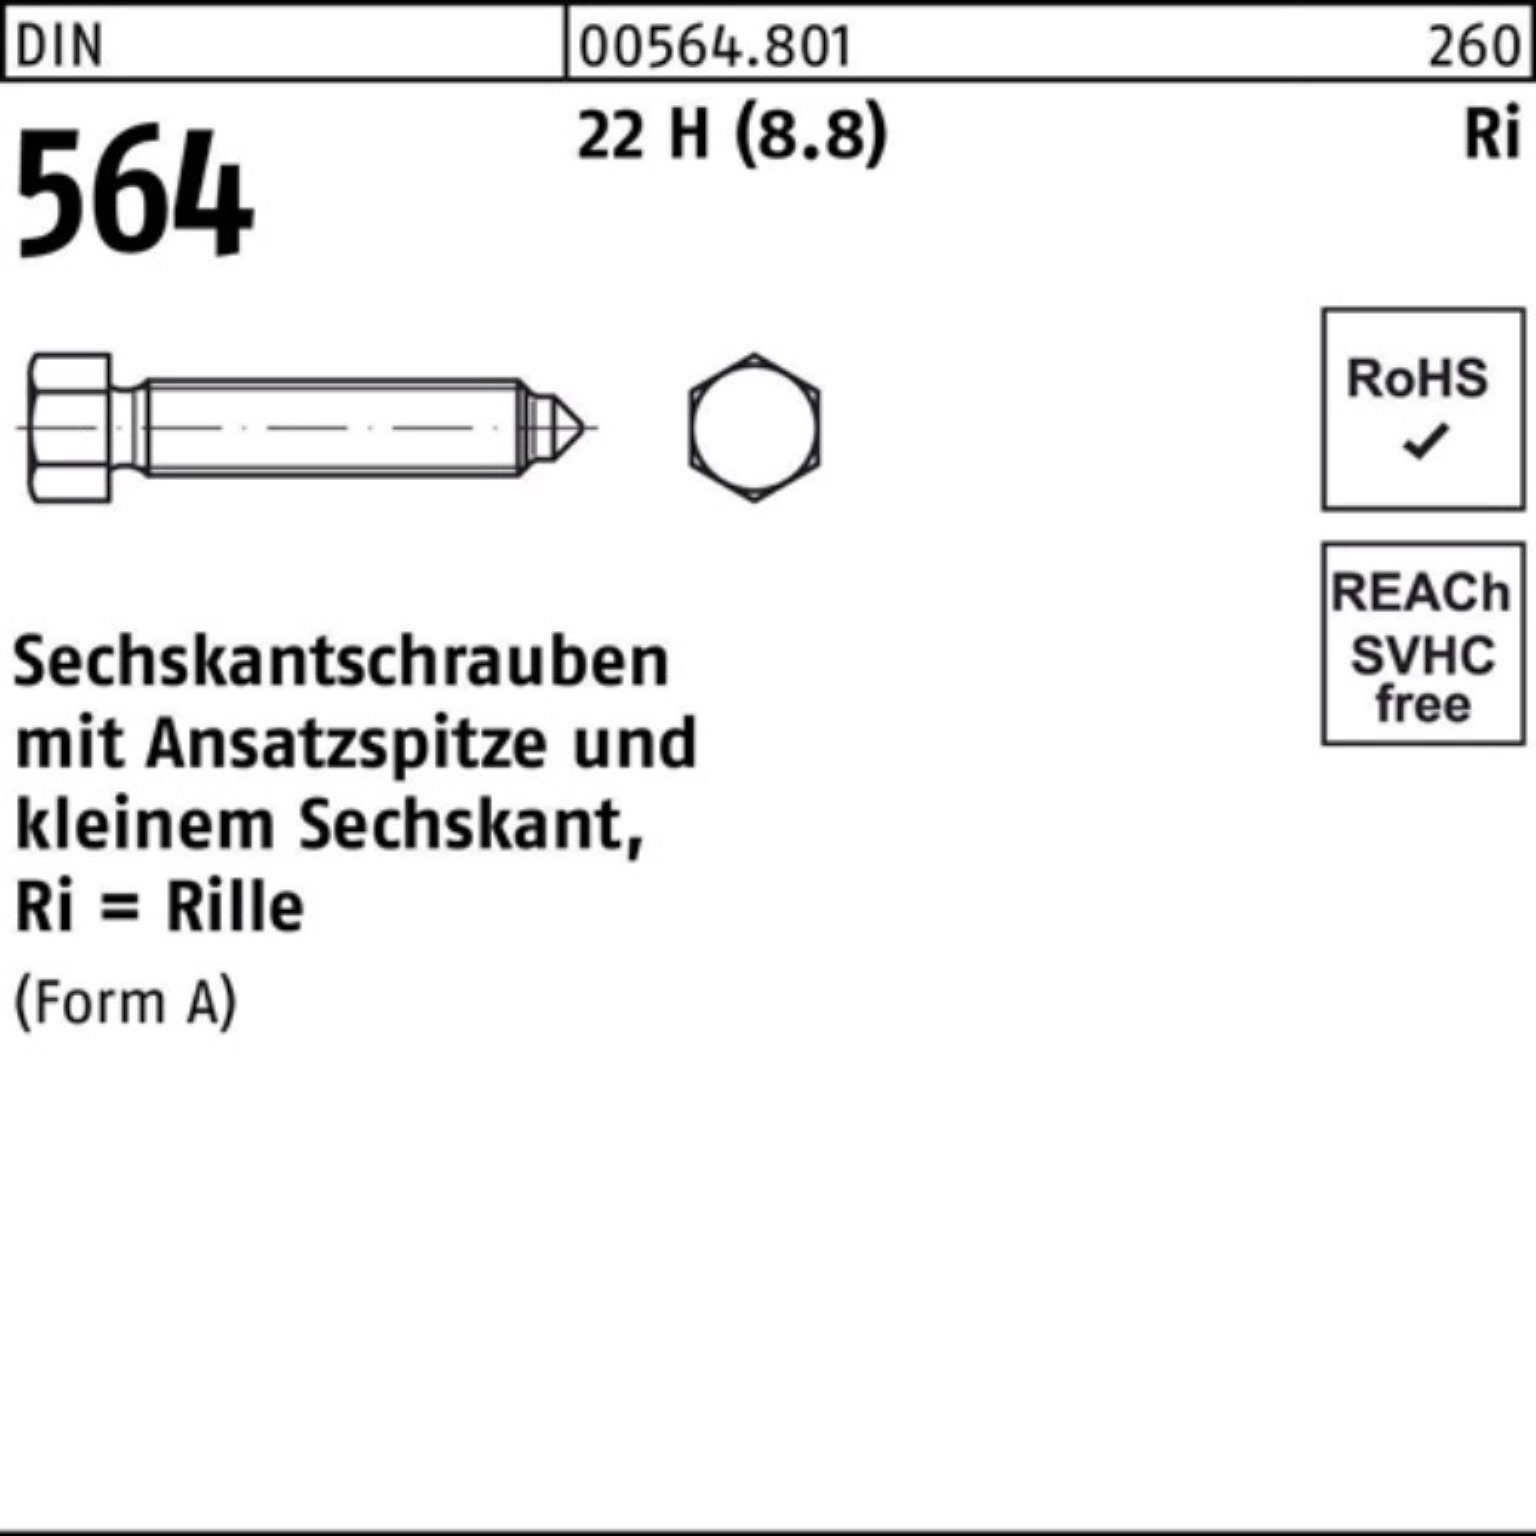 DIN Sechskantschraube 80 Ansatzspitze AM 22 564 100er Reyher H Sechskantschraube Pack (8.8) 16x